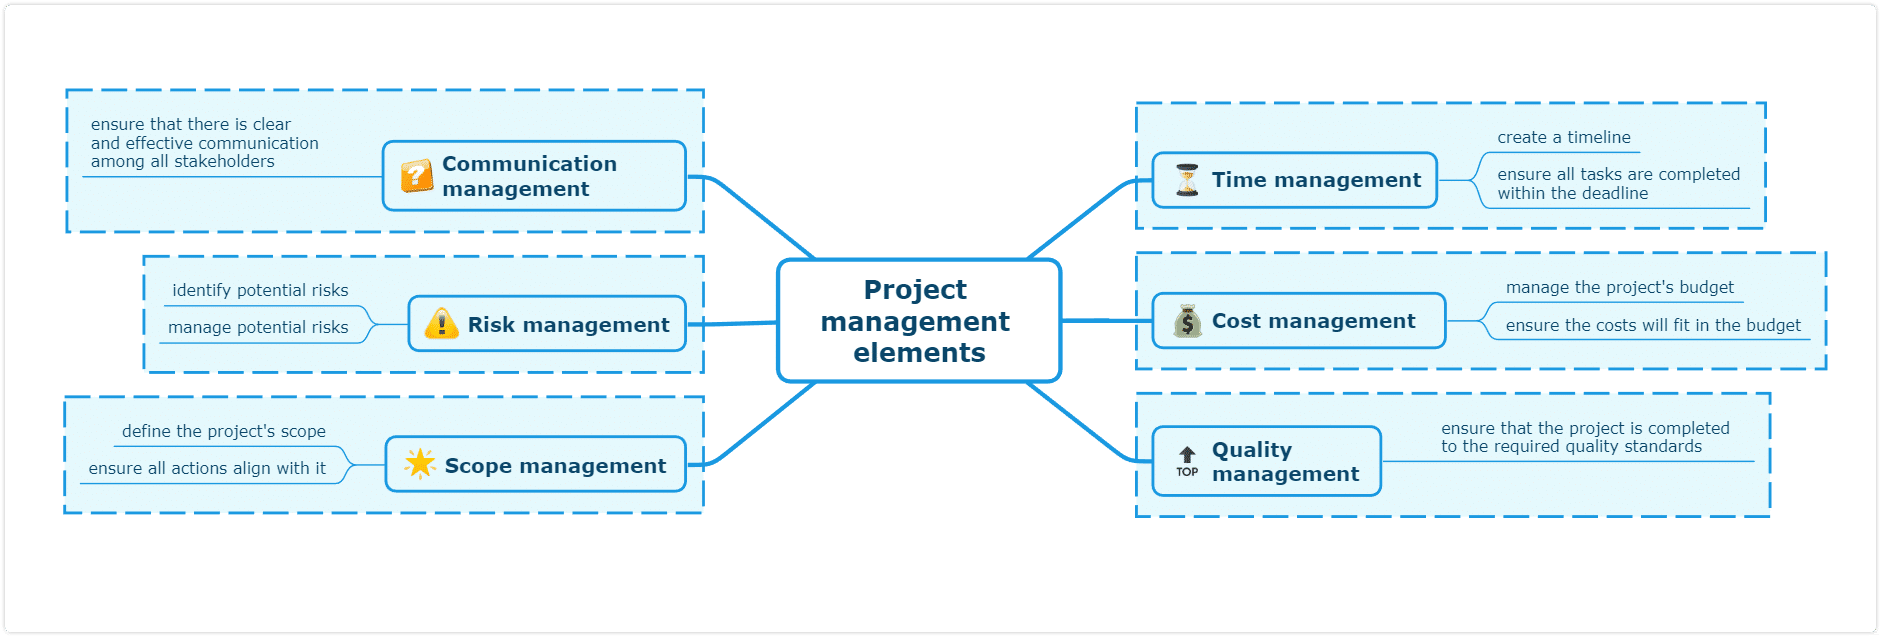 project planning techniques - project management elements